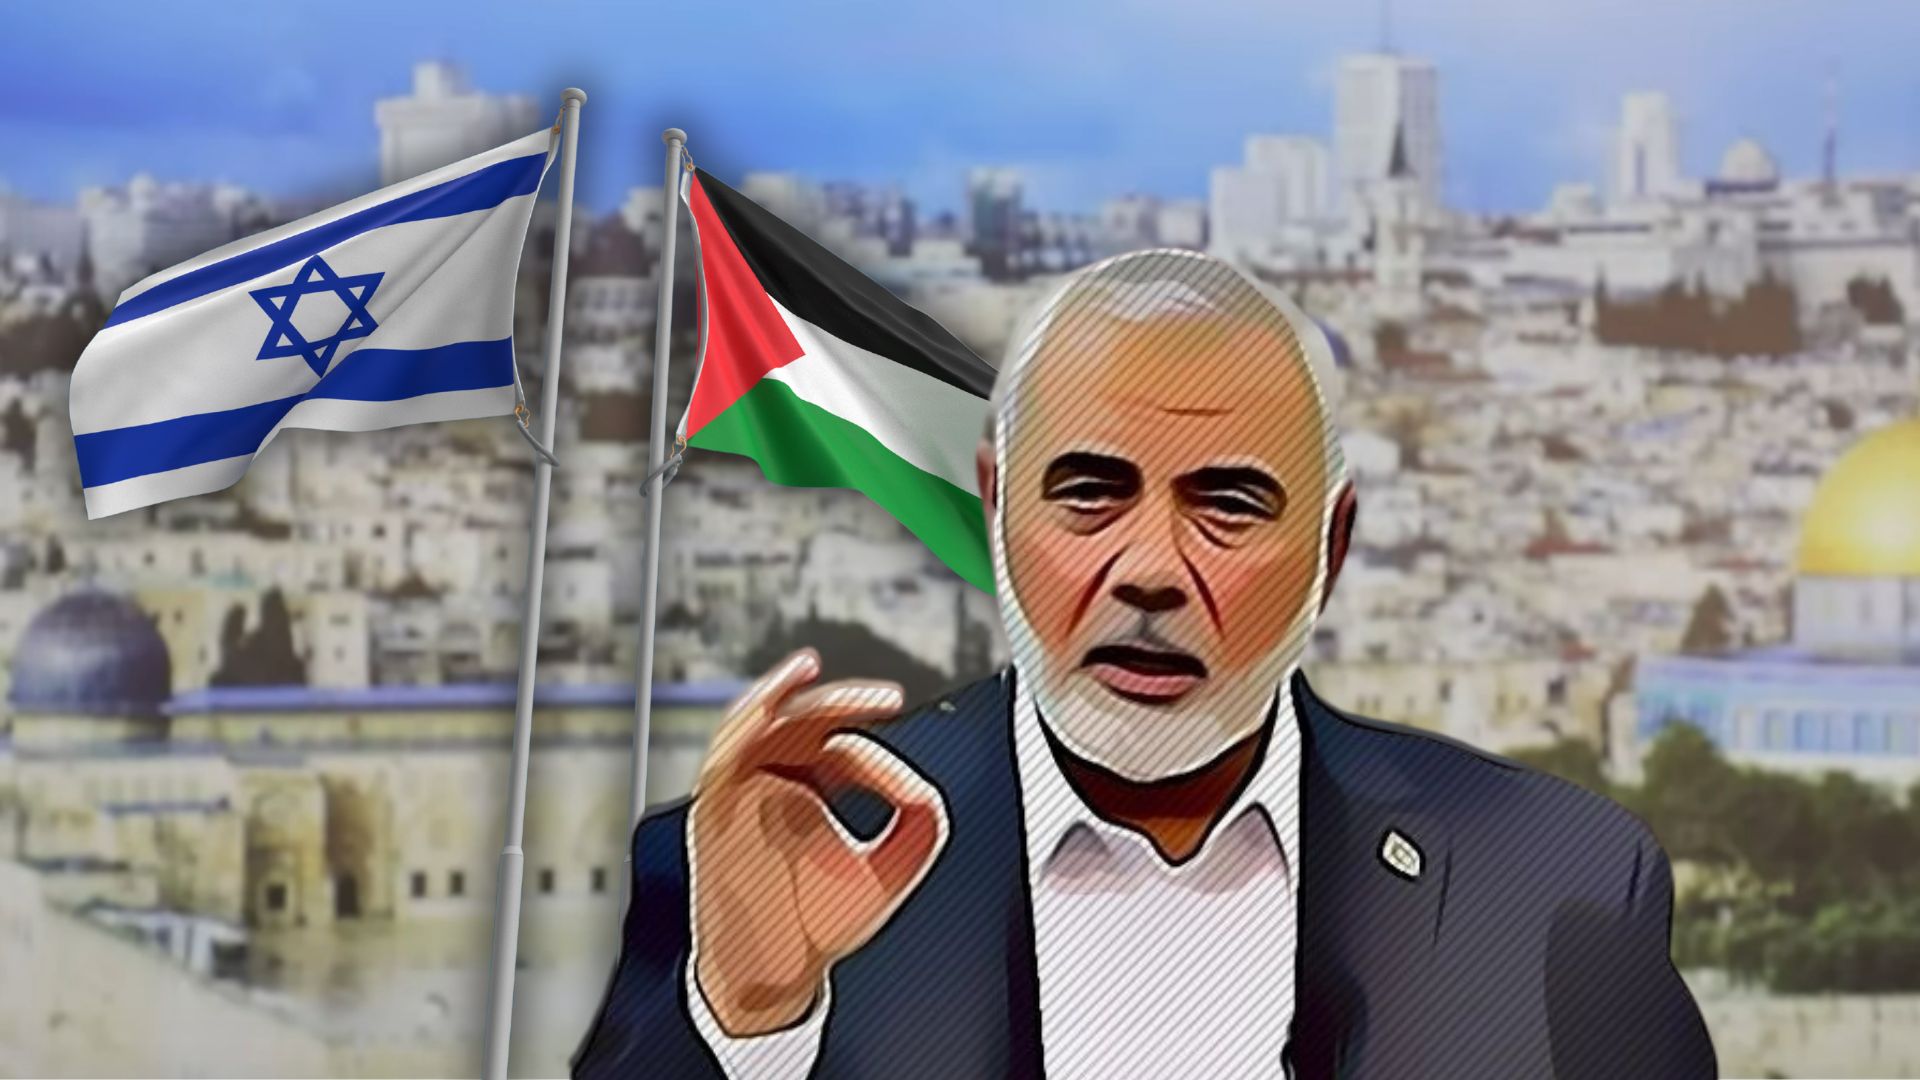 Accordo fake: tutti felici di abboccare alla propaganda di Hamas